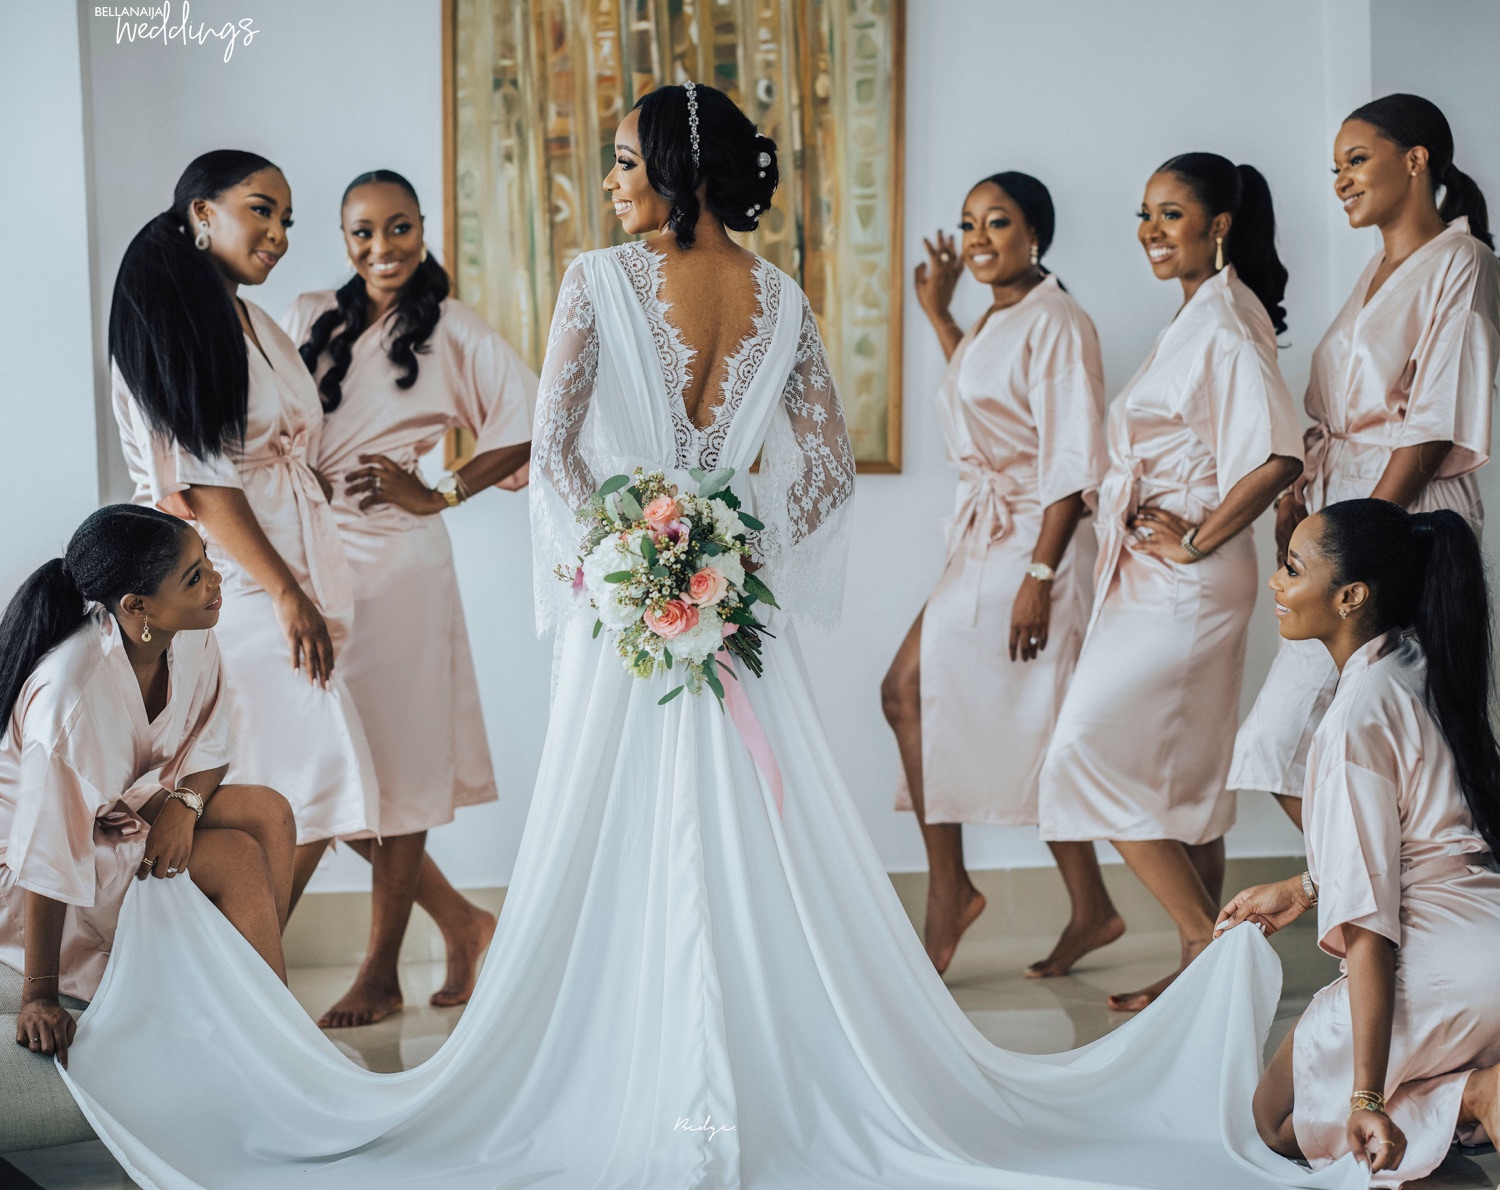 Feel all The Love and Beauty at Nneka & Koyin's Wedding! | BellaNaija